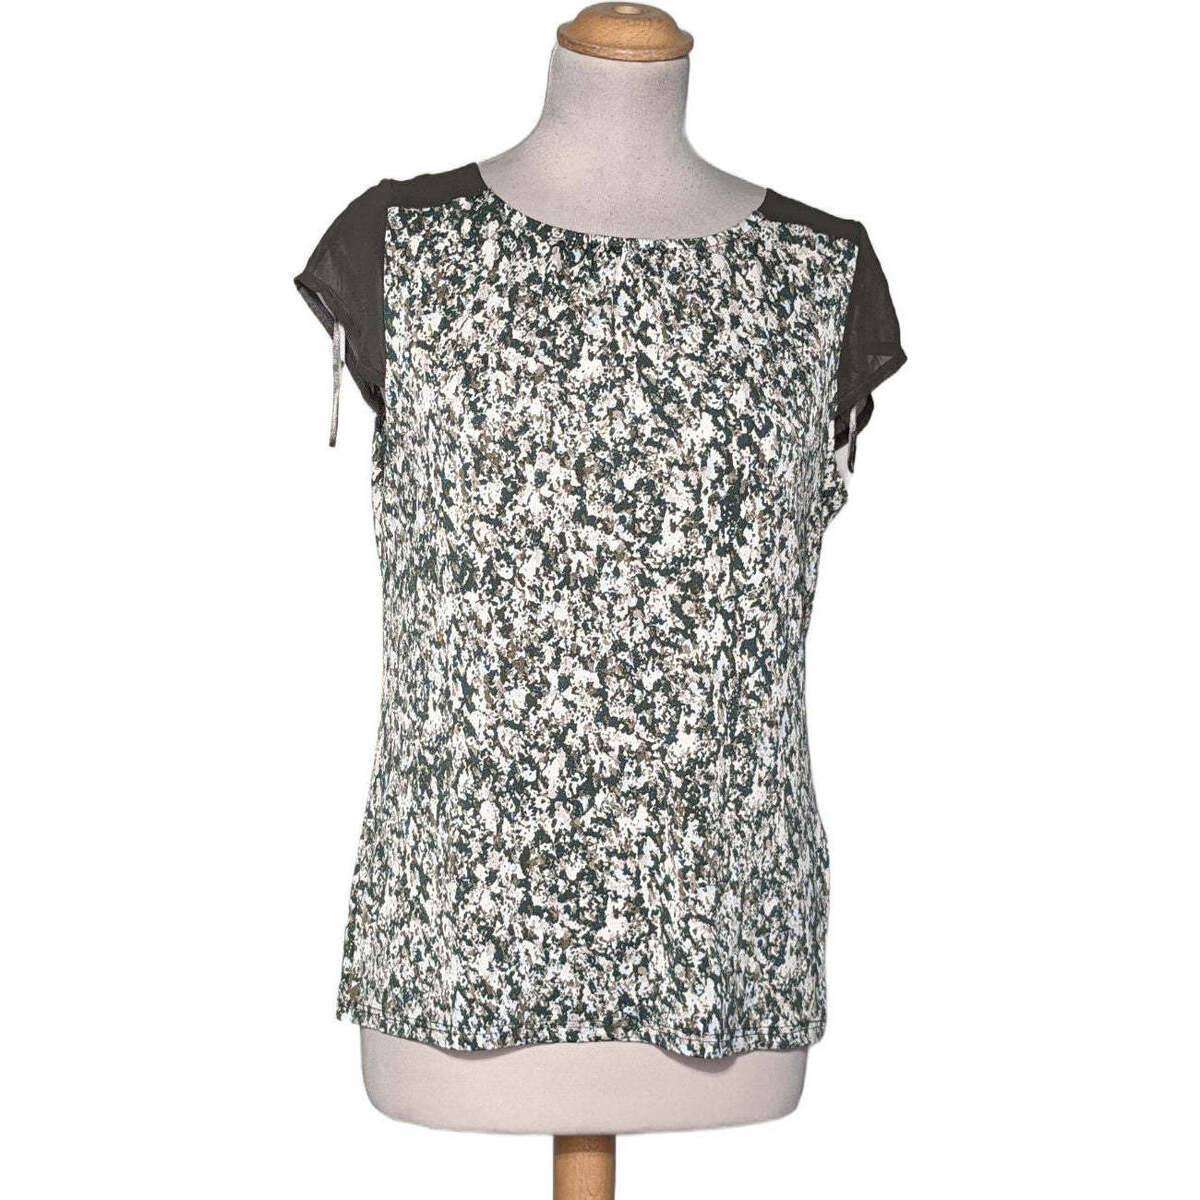 Vêtements Femme high neck pleated shirt top manches courtes  36 - T1 - S Vert Vert